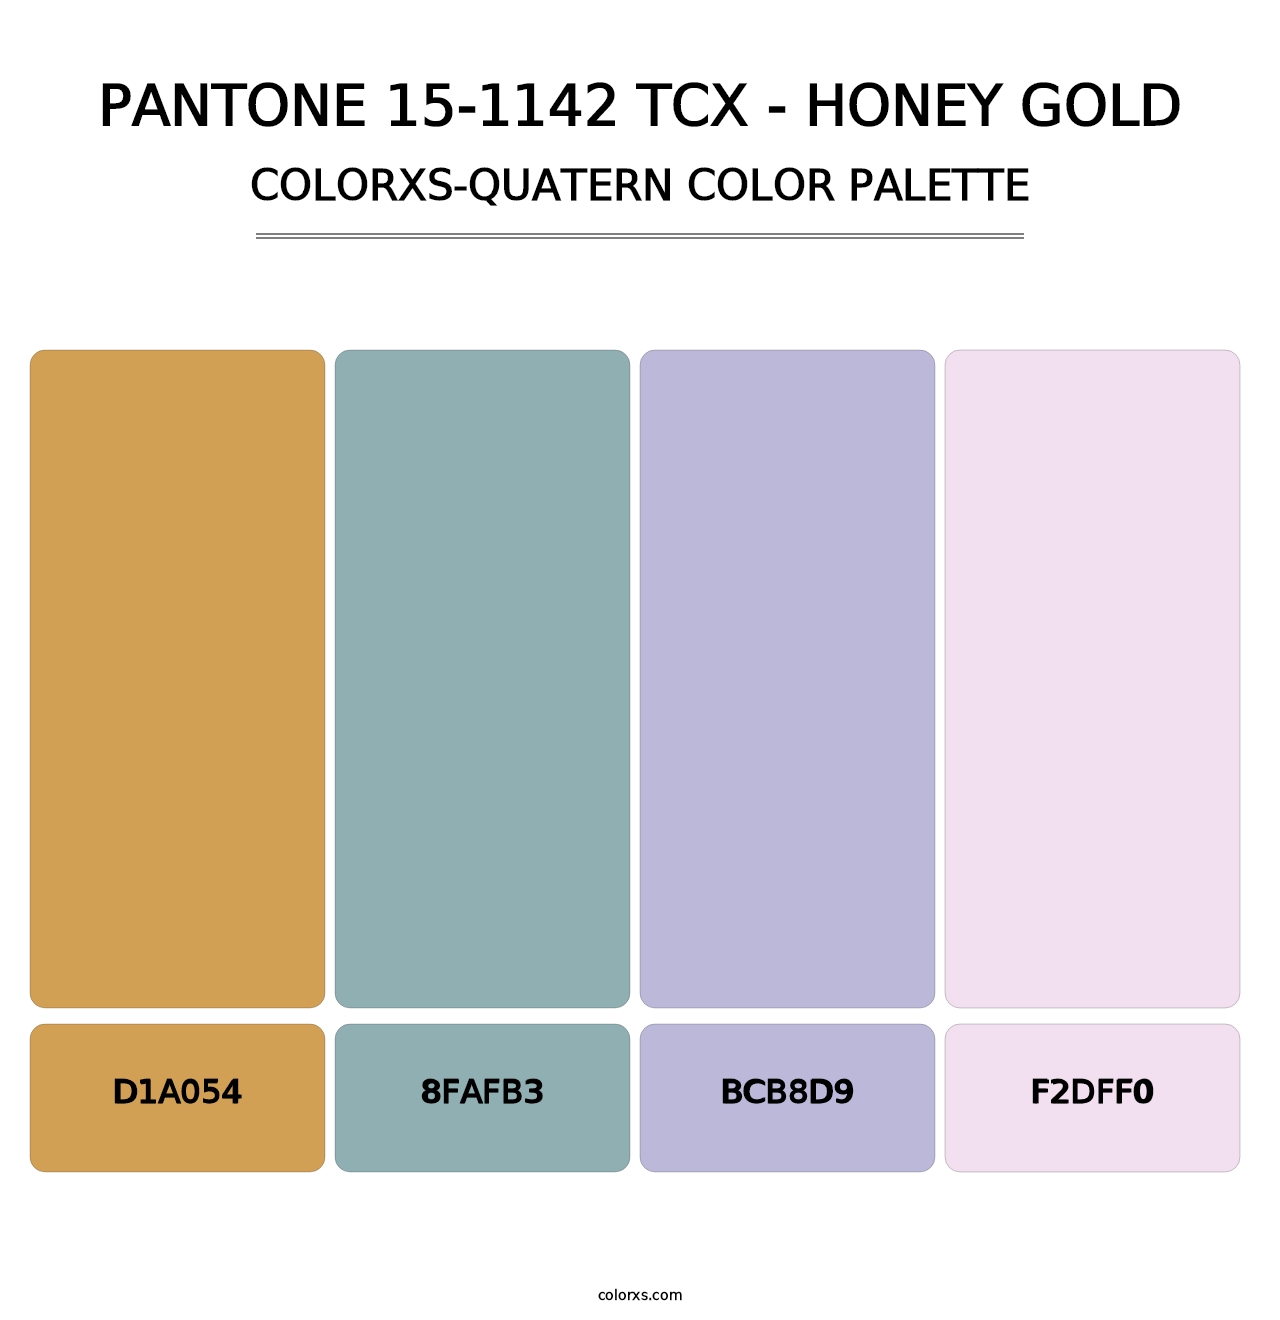 PANTONE 15-1142 TCX - Honey Gold - Colorxs Quatern Palette